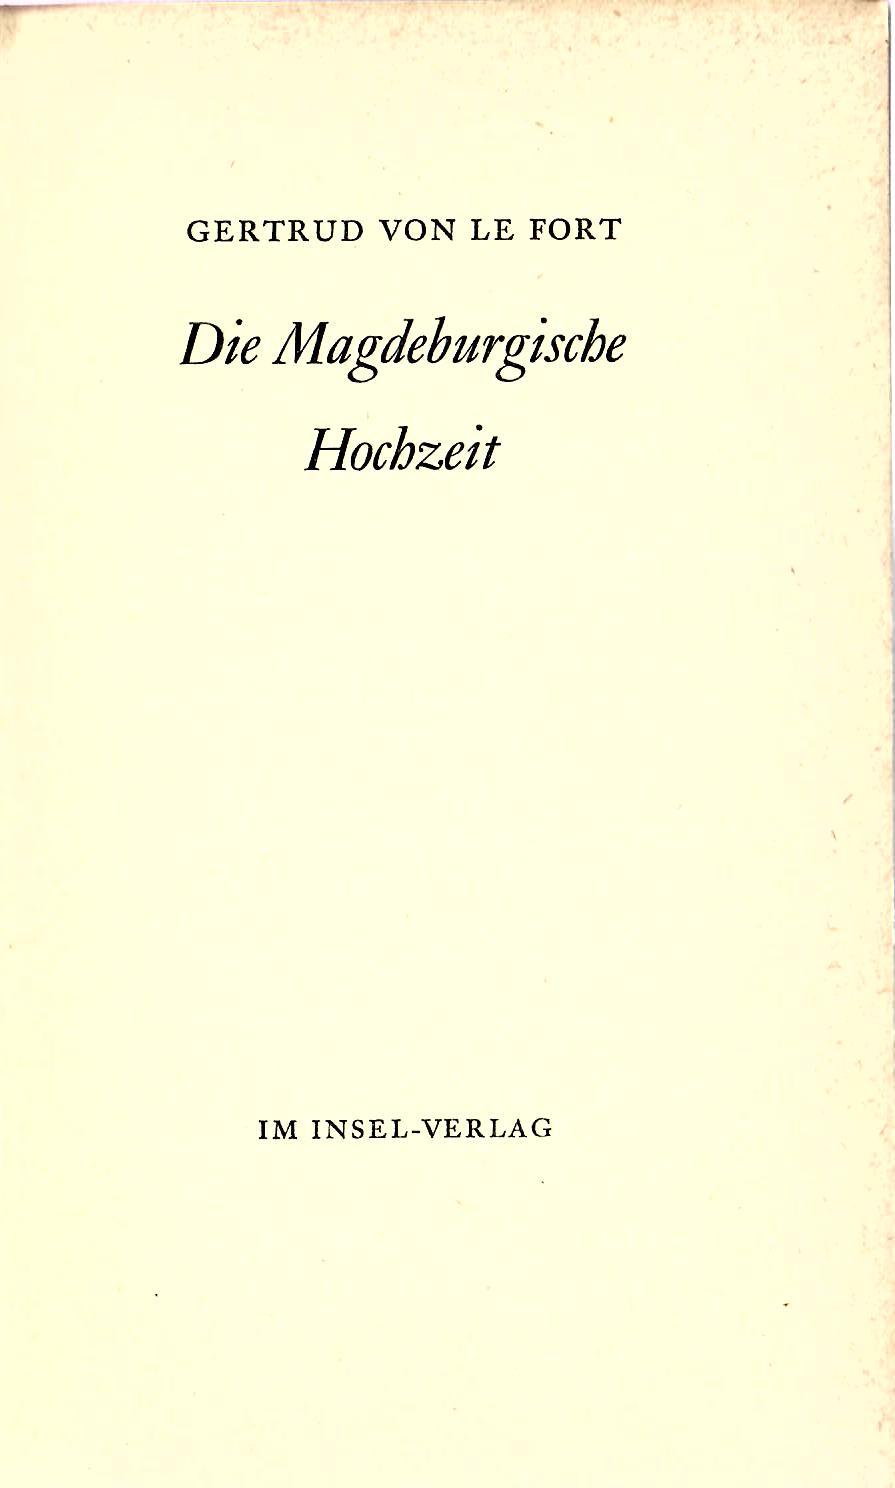 Erstausgabe : - FORT, Gertrud von le   : Die Magdeburgische Hochzeit : Insel Verlag Leipzig 1938 : 242 Seiten erste Auflage :